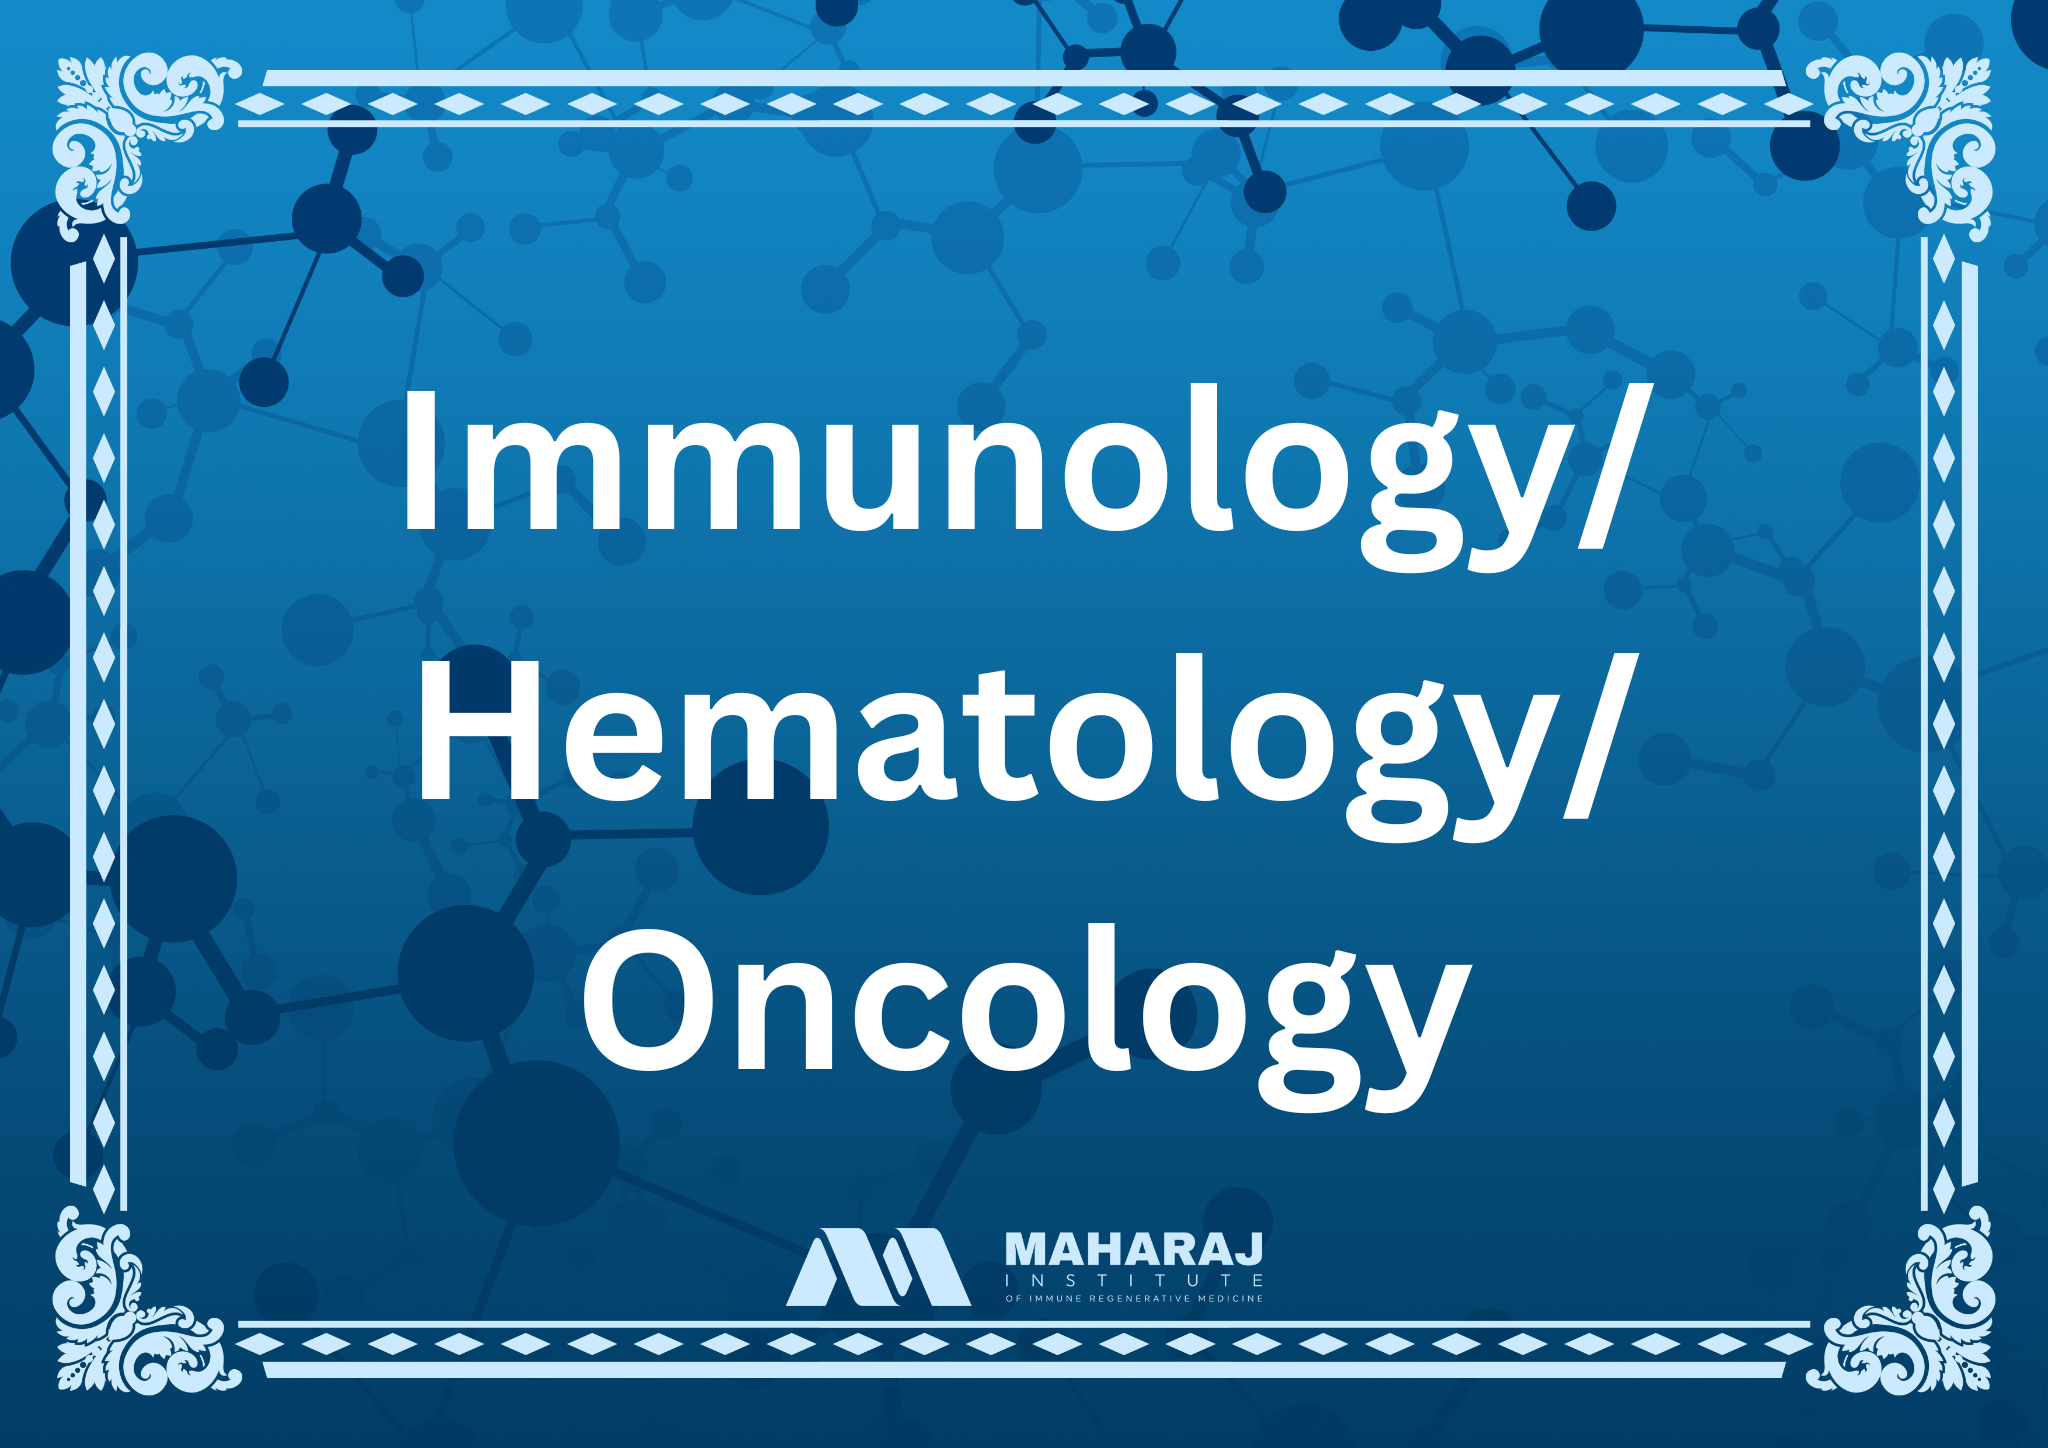 Immunology/Hematology/Oncology